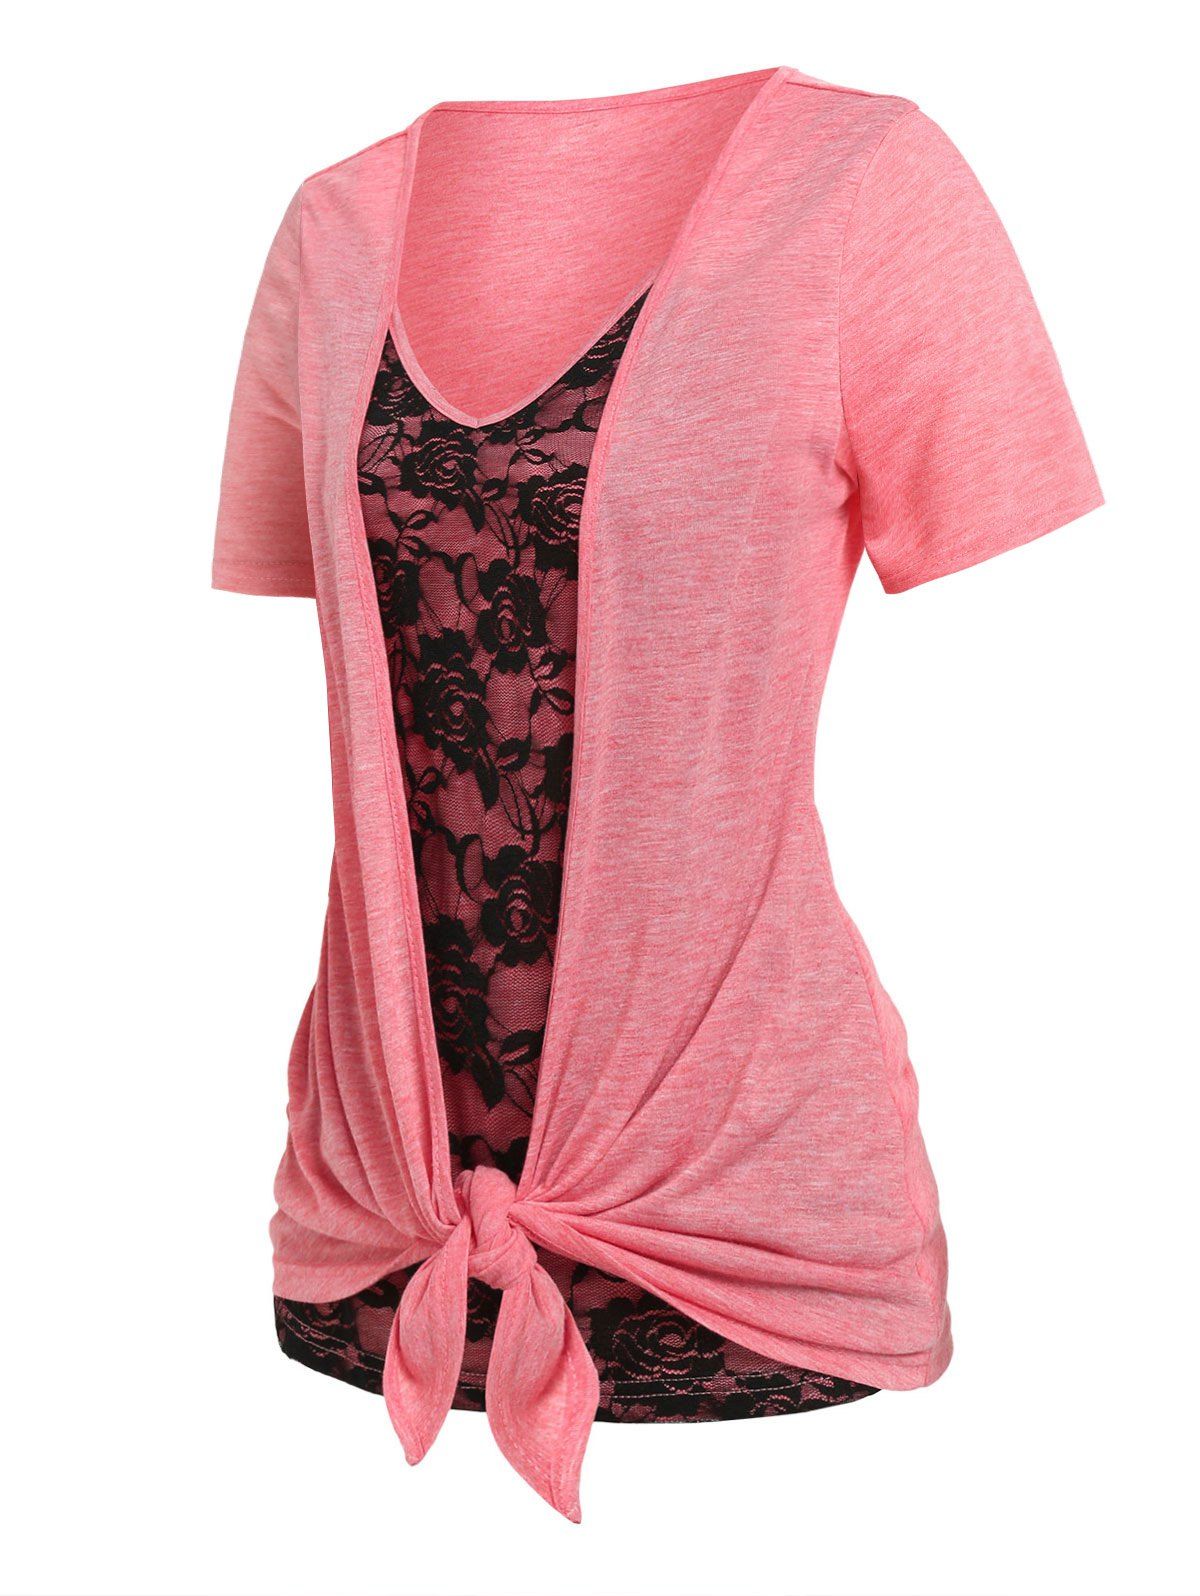 T-shirt Drapé Bicolore Panneau en Dentelle de Grande Taille - Rose clair 3X